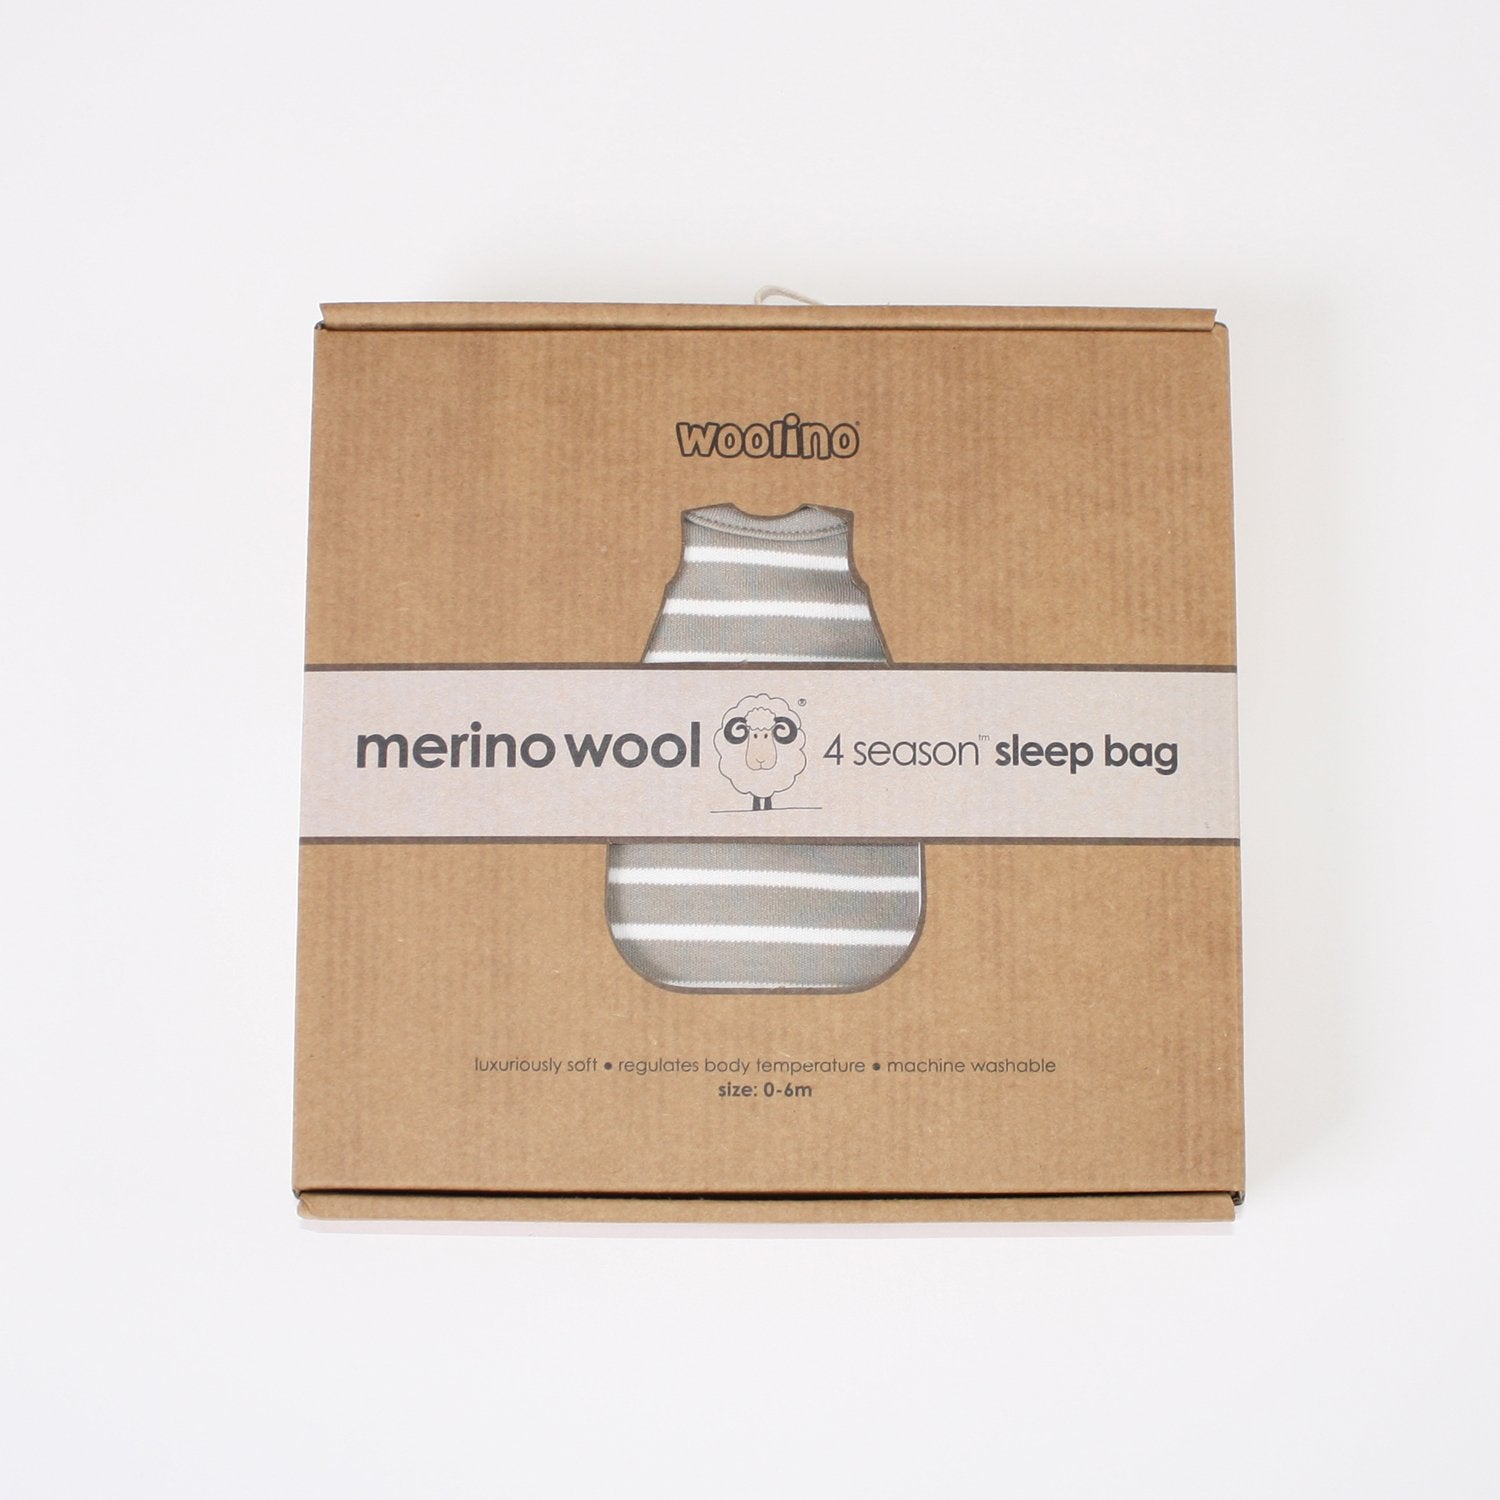 Woolino 4 Season BASIC Merino Wool Baby Sleep Bag in Birch Gray